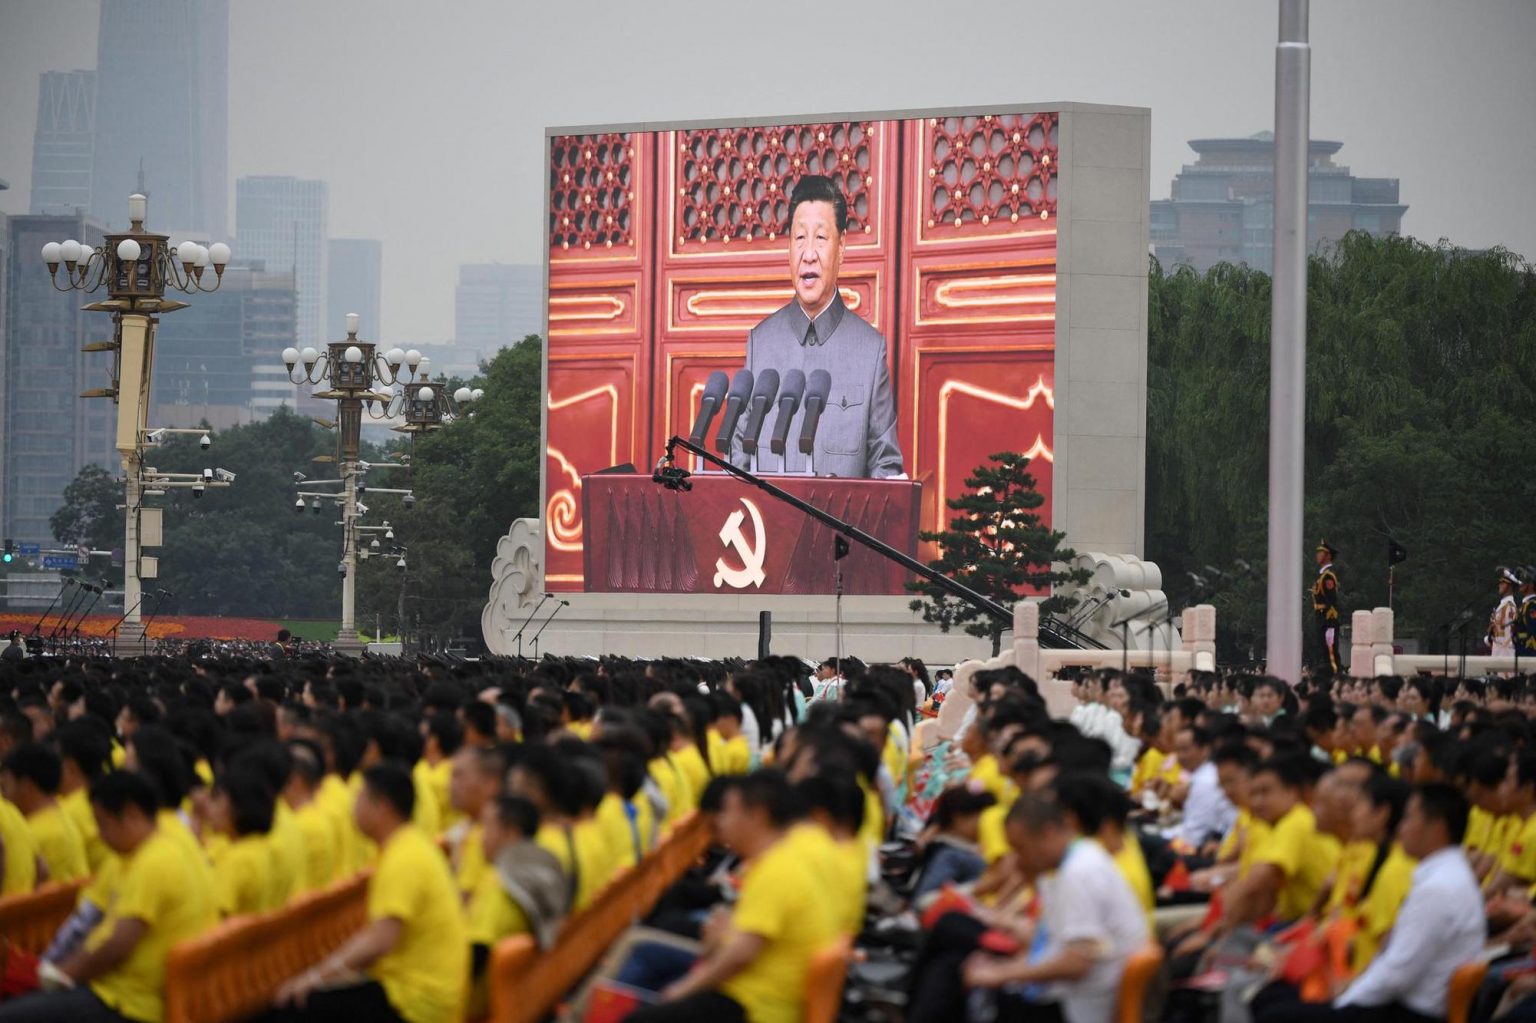 Chine -Hong Kong - Le procès politique truqué du catholique chinois Jimmy Lai qui risque la prison à vie 0EwW84ux4t8841_i0ovoao-1536x1023